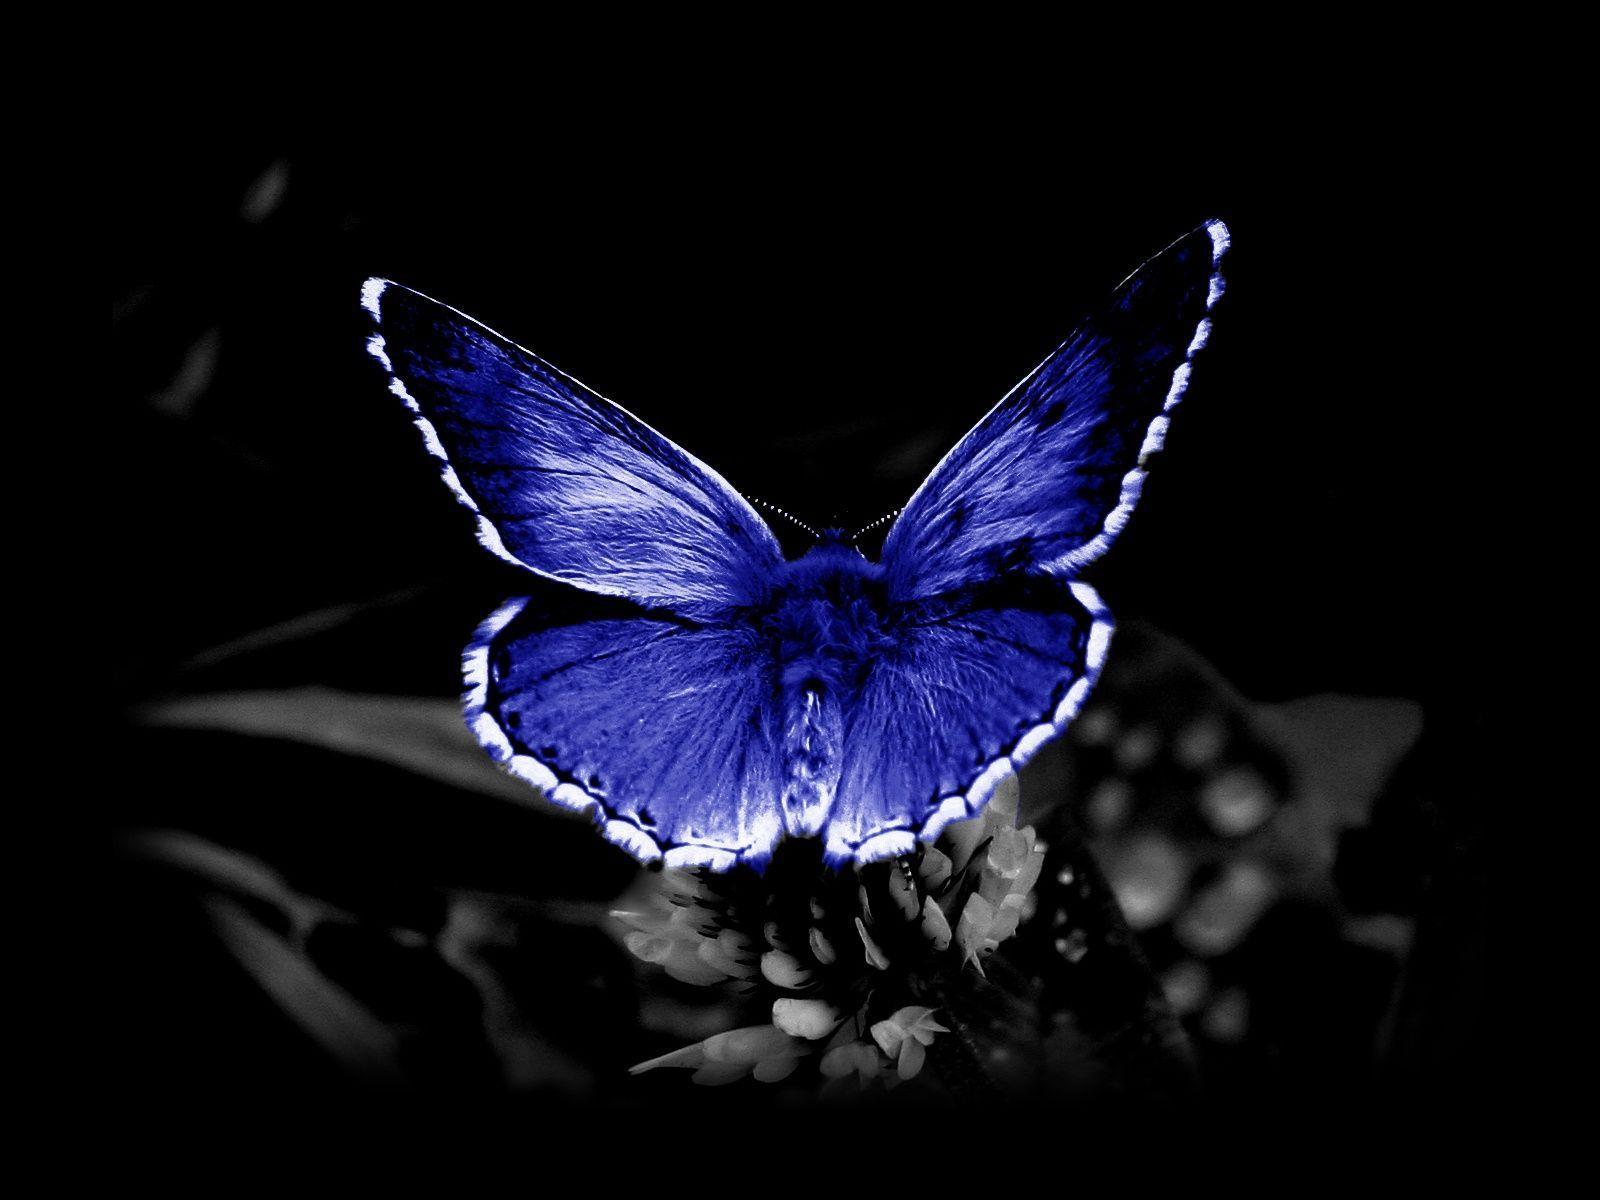 Black Blue Butterfly Wallpaper 21411 High Resolution. wallpicnet